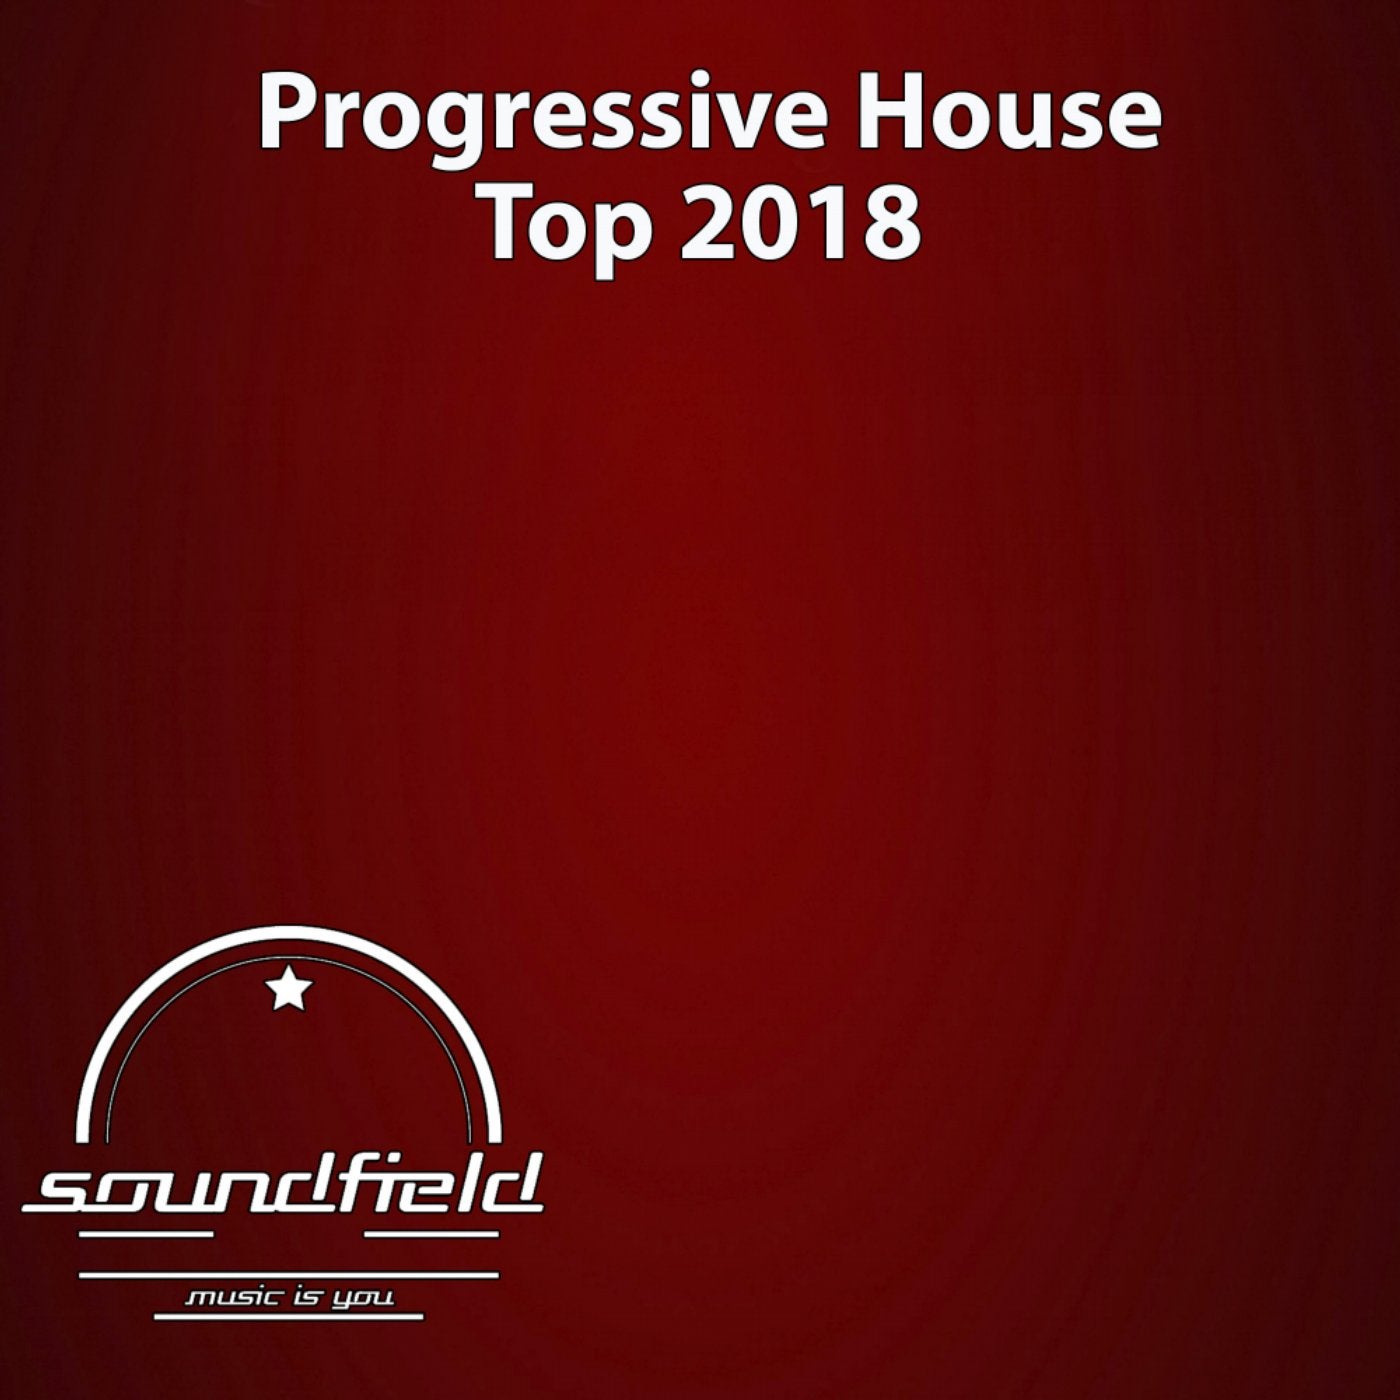 Progressive House Top 2018